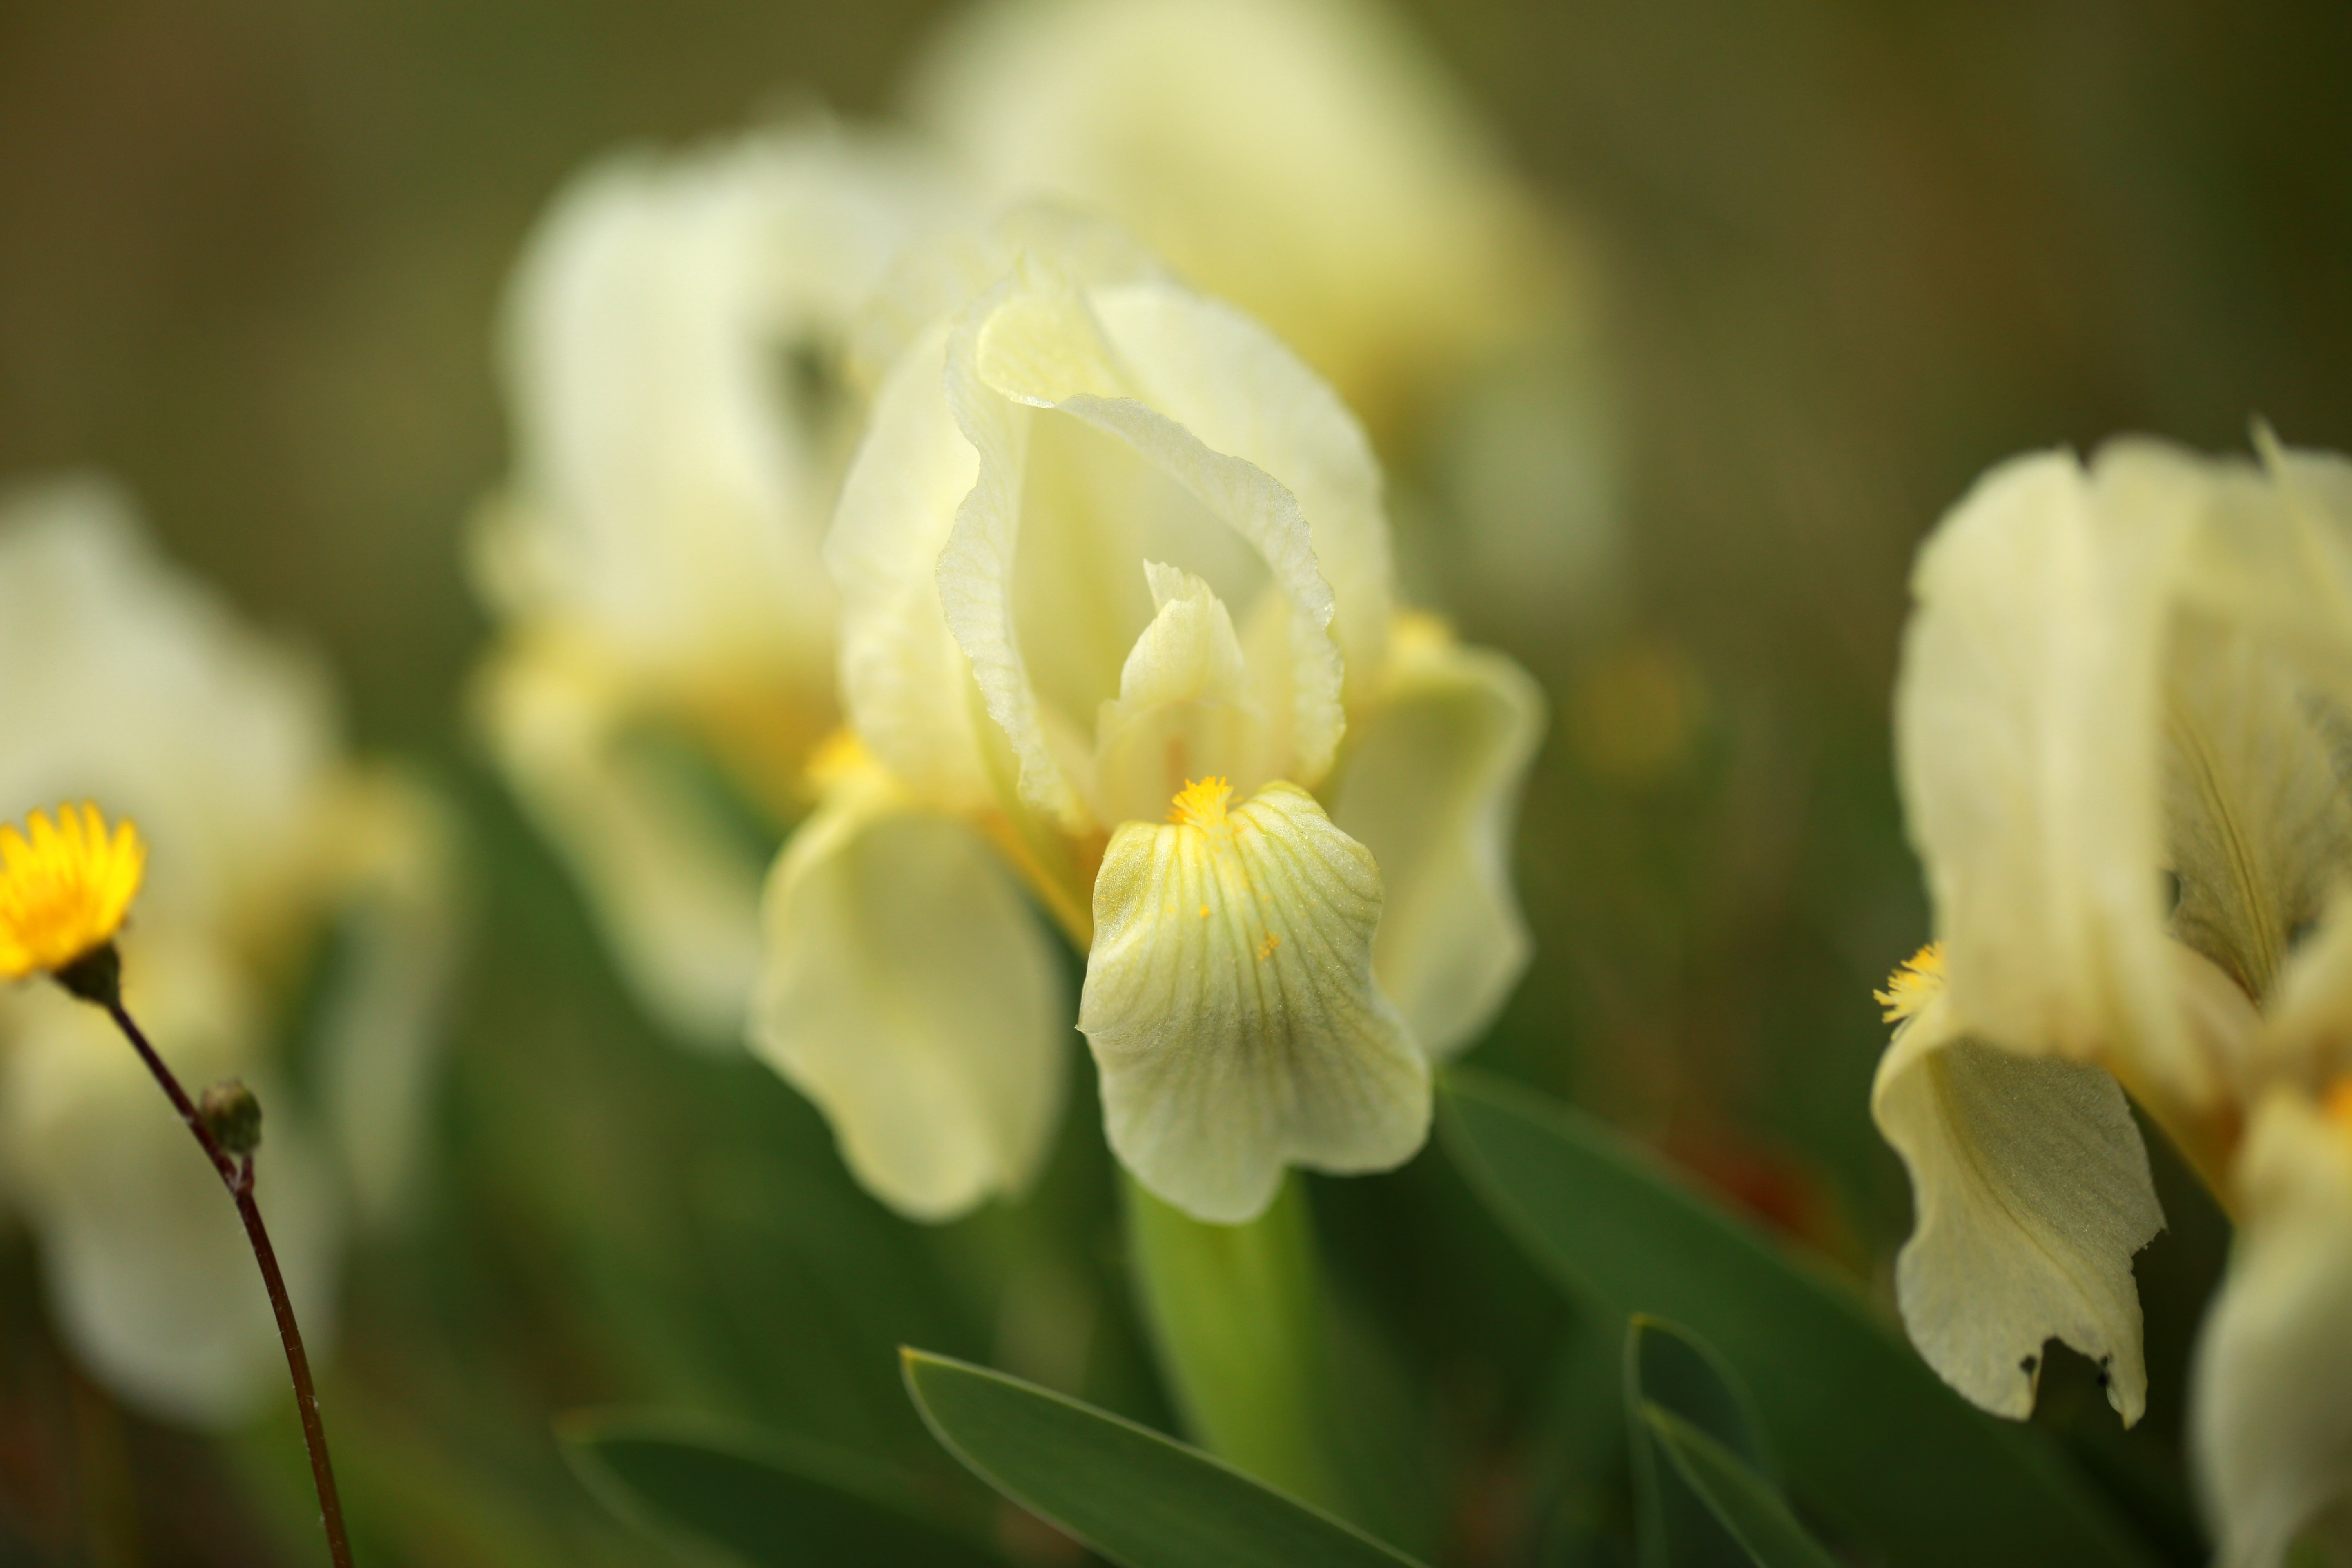 Yellow dwarf iris flower